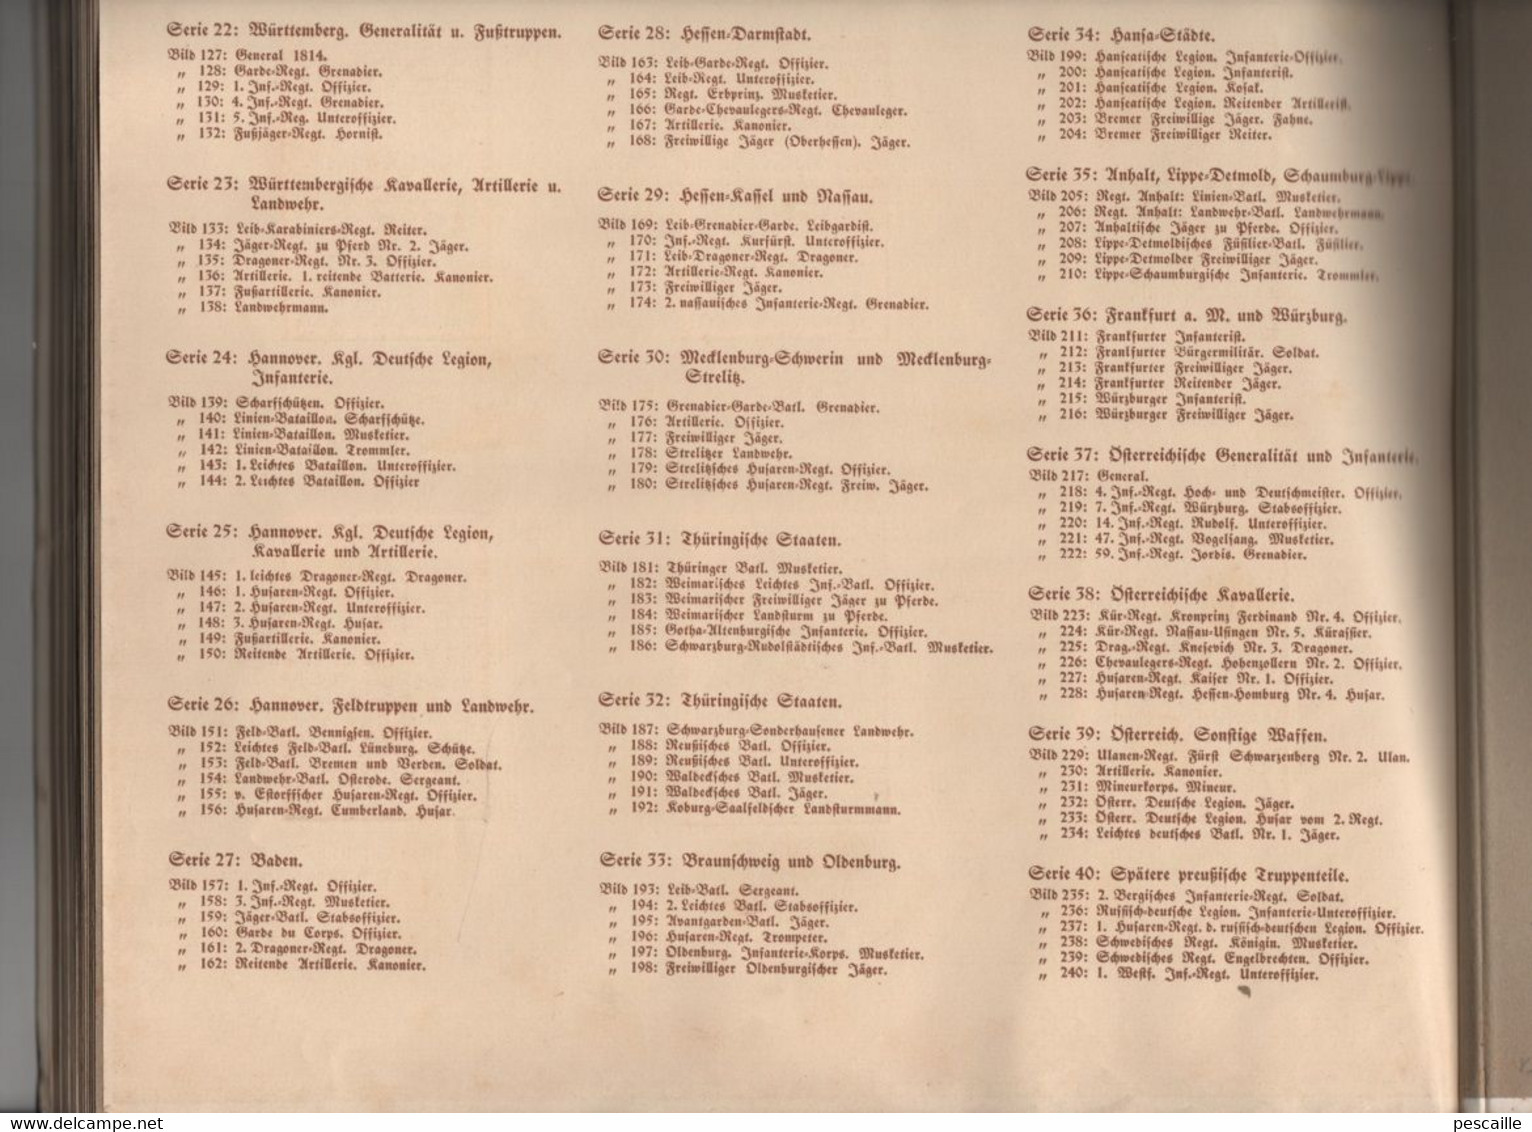 STURM ZIGARETTEN - ALBUM COMPLET - MILITARIA - DEUTSCHE UNIFORMEN 1813 1815 - 1932 - 240 IMAGES